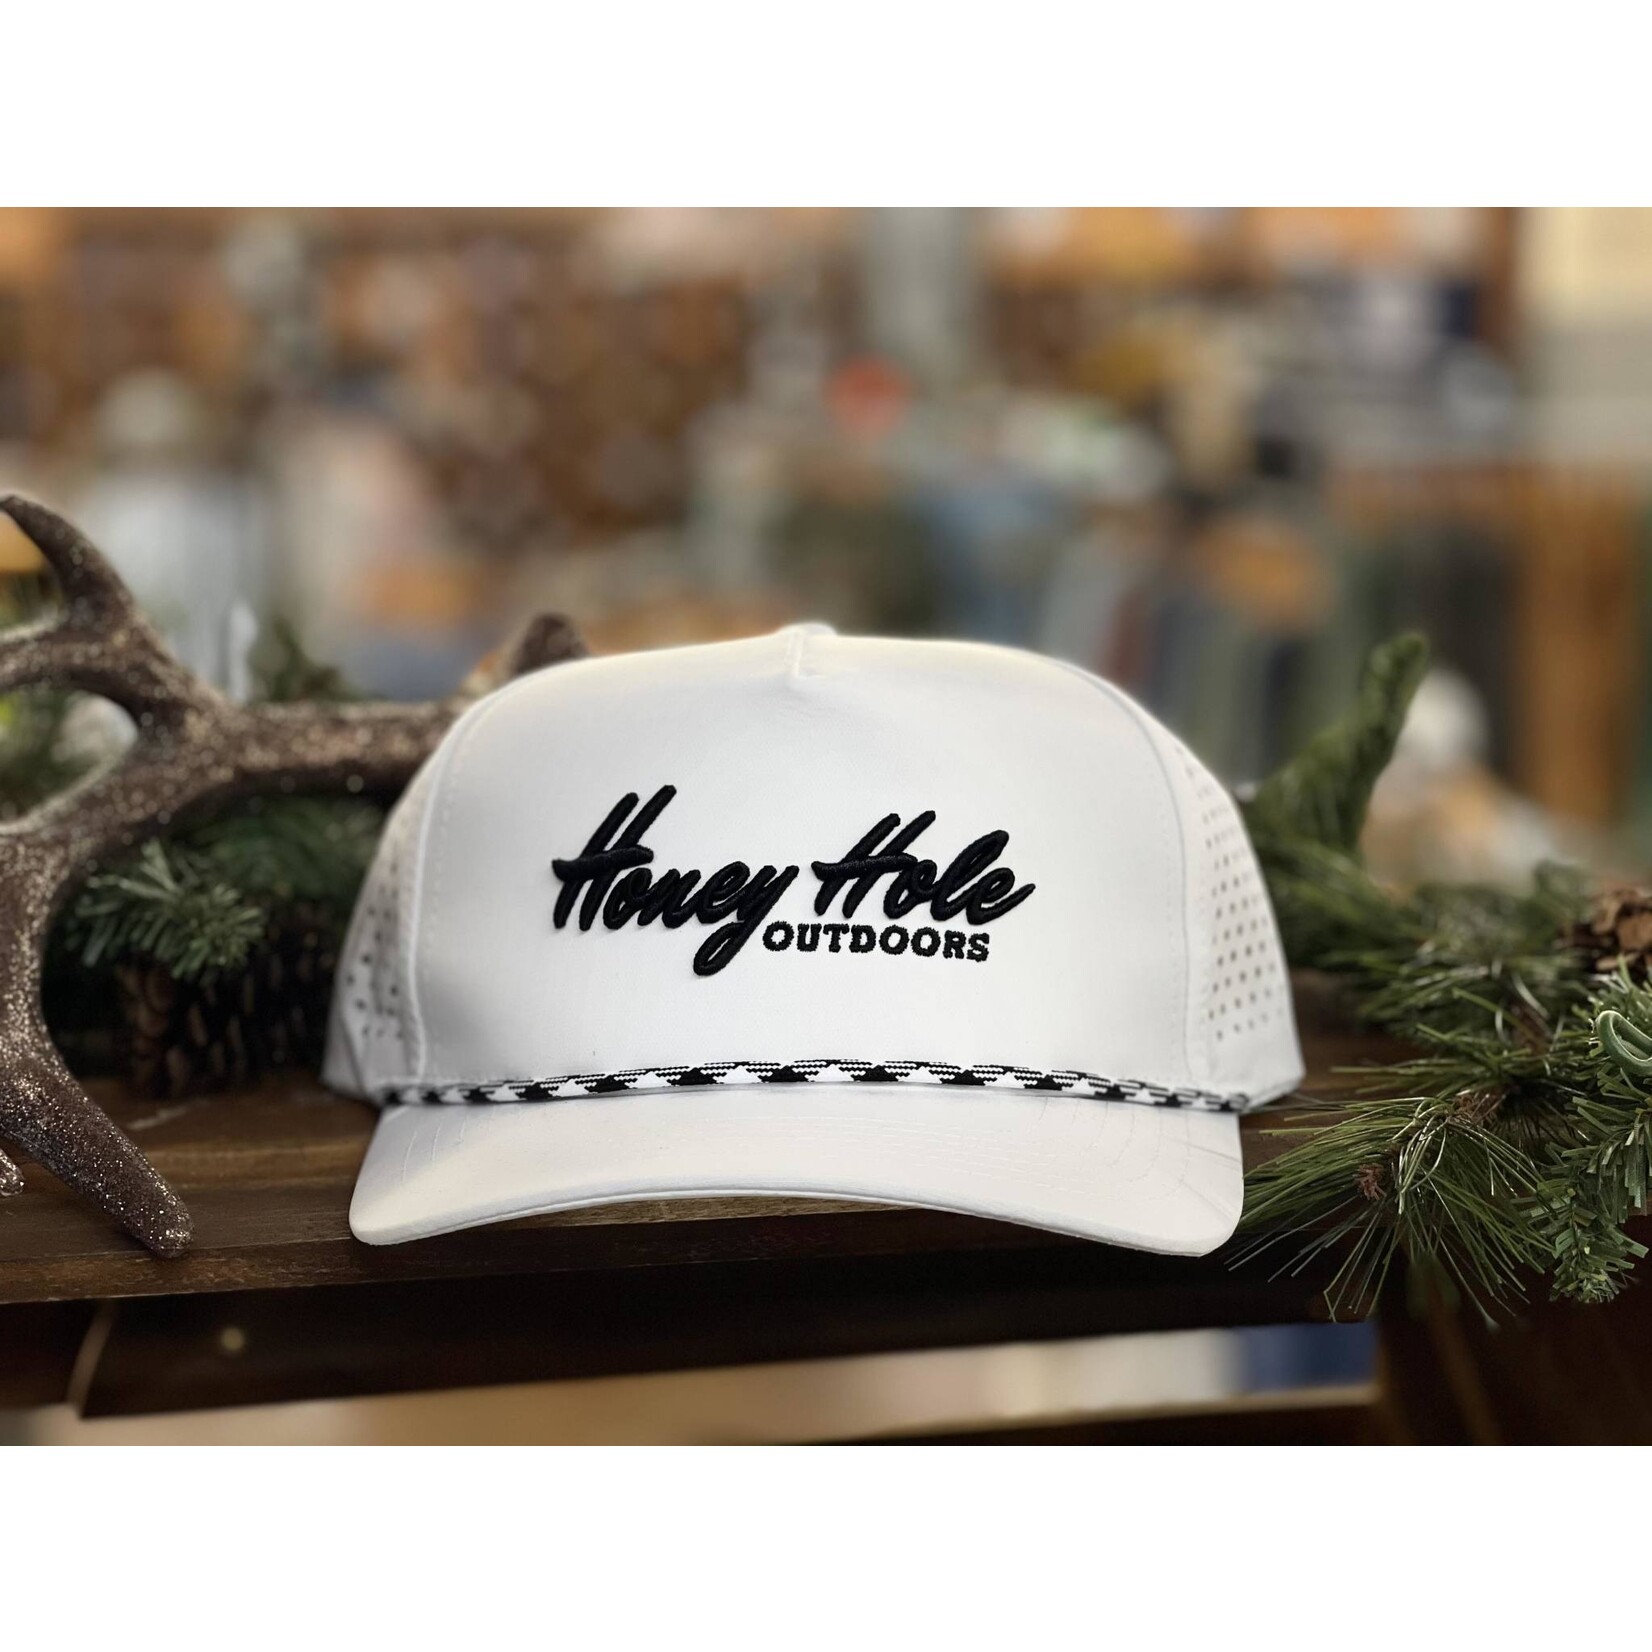 Honey Hole Outdoors Honey Hole Outdoors Heritage Performance Rope Snapback Hat